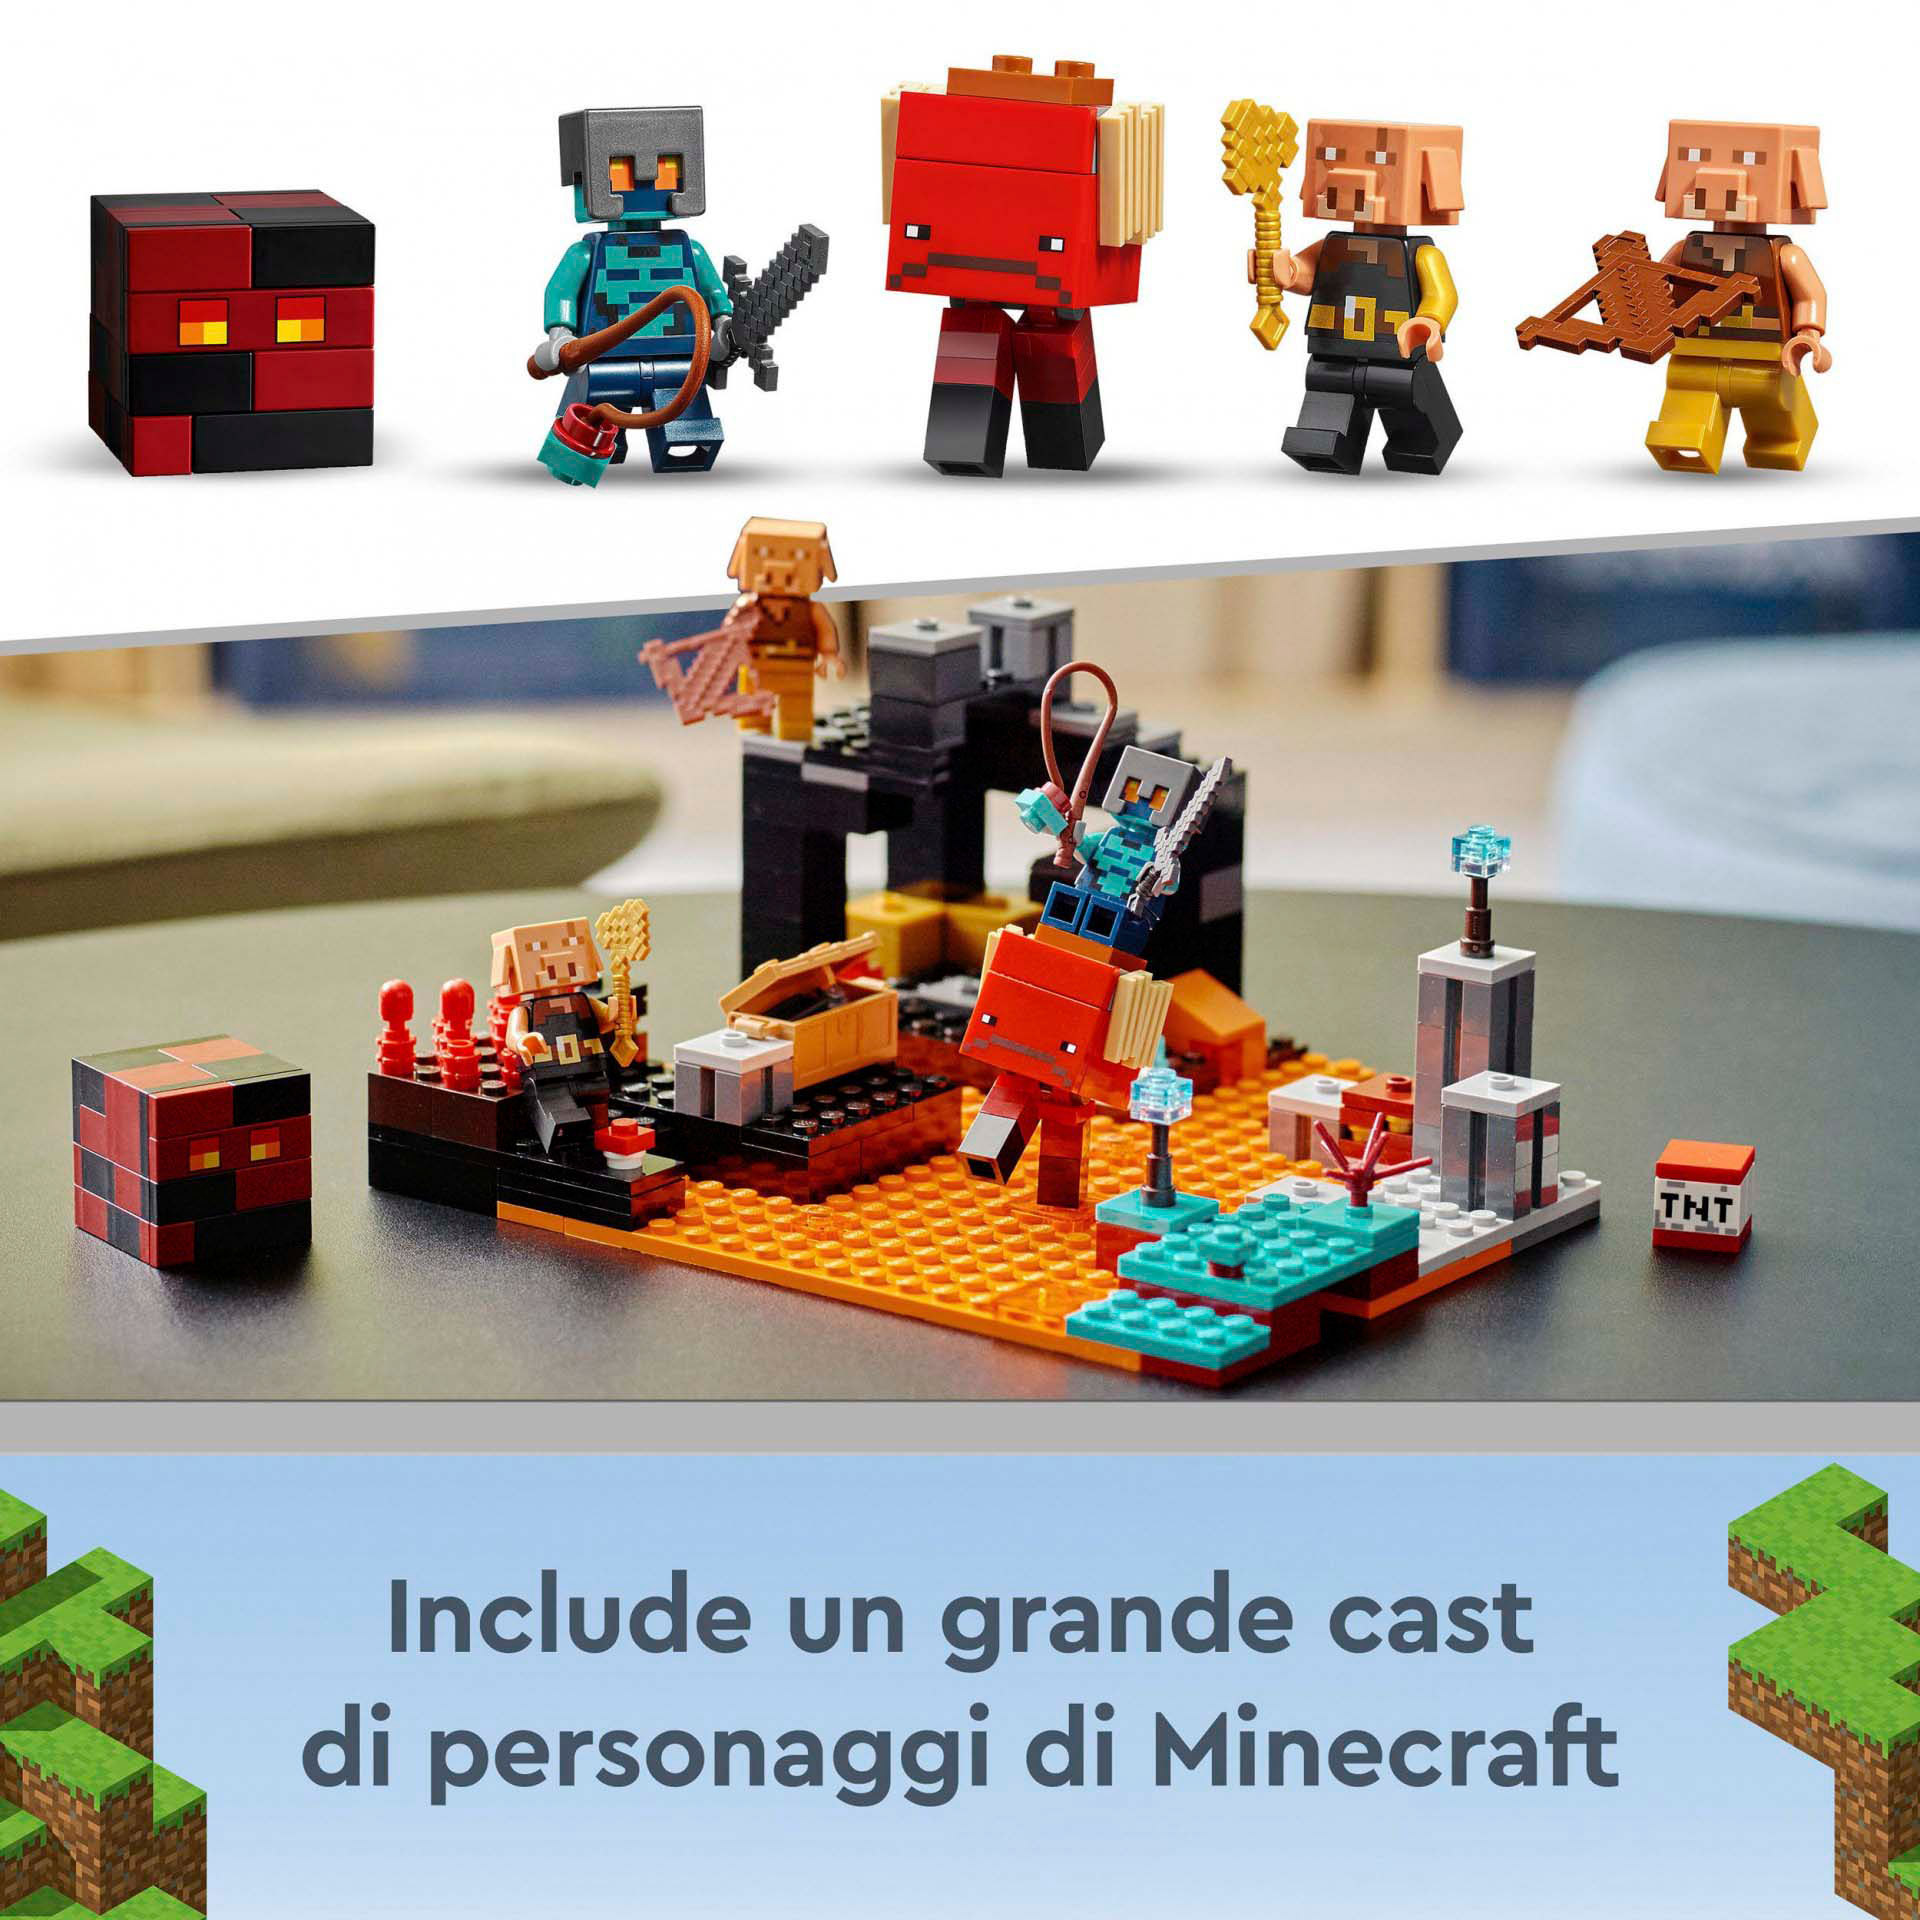 LEGO Minecraft Il Bastione del Nether, Modellino da Costruire, Castello Giocatto 21185, , large